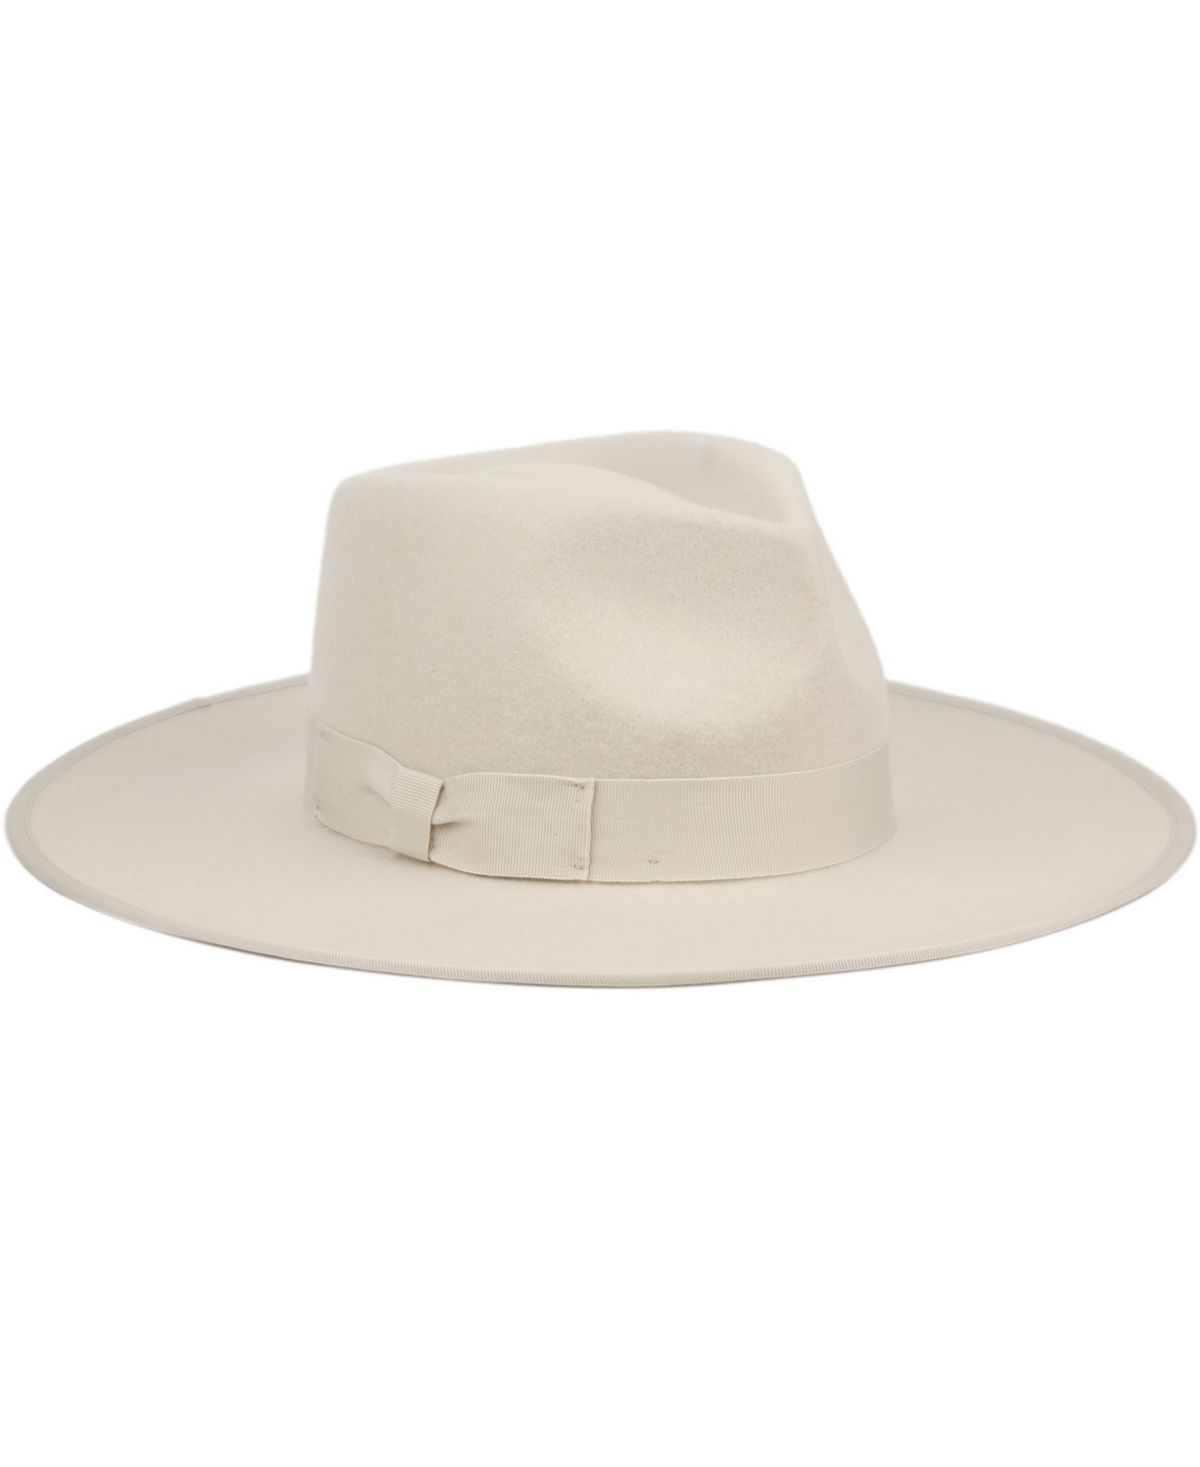 Женская фетровая шляпа Rancher Fedora с широкими полями Angela & William, серый